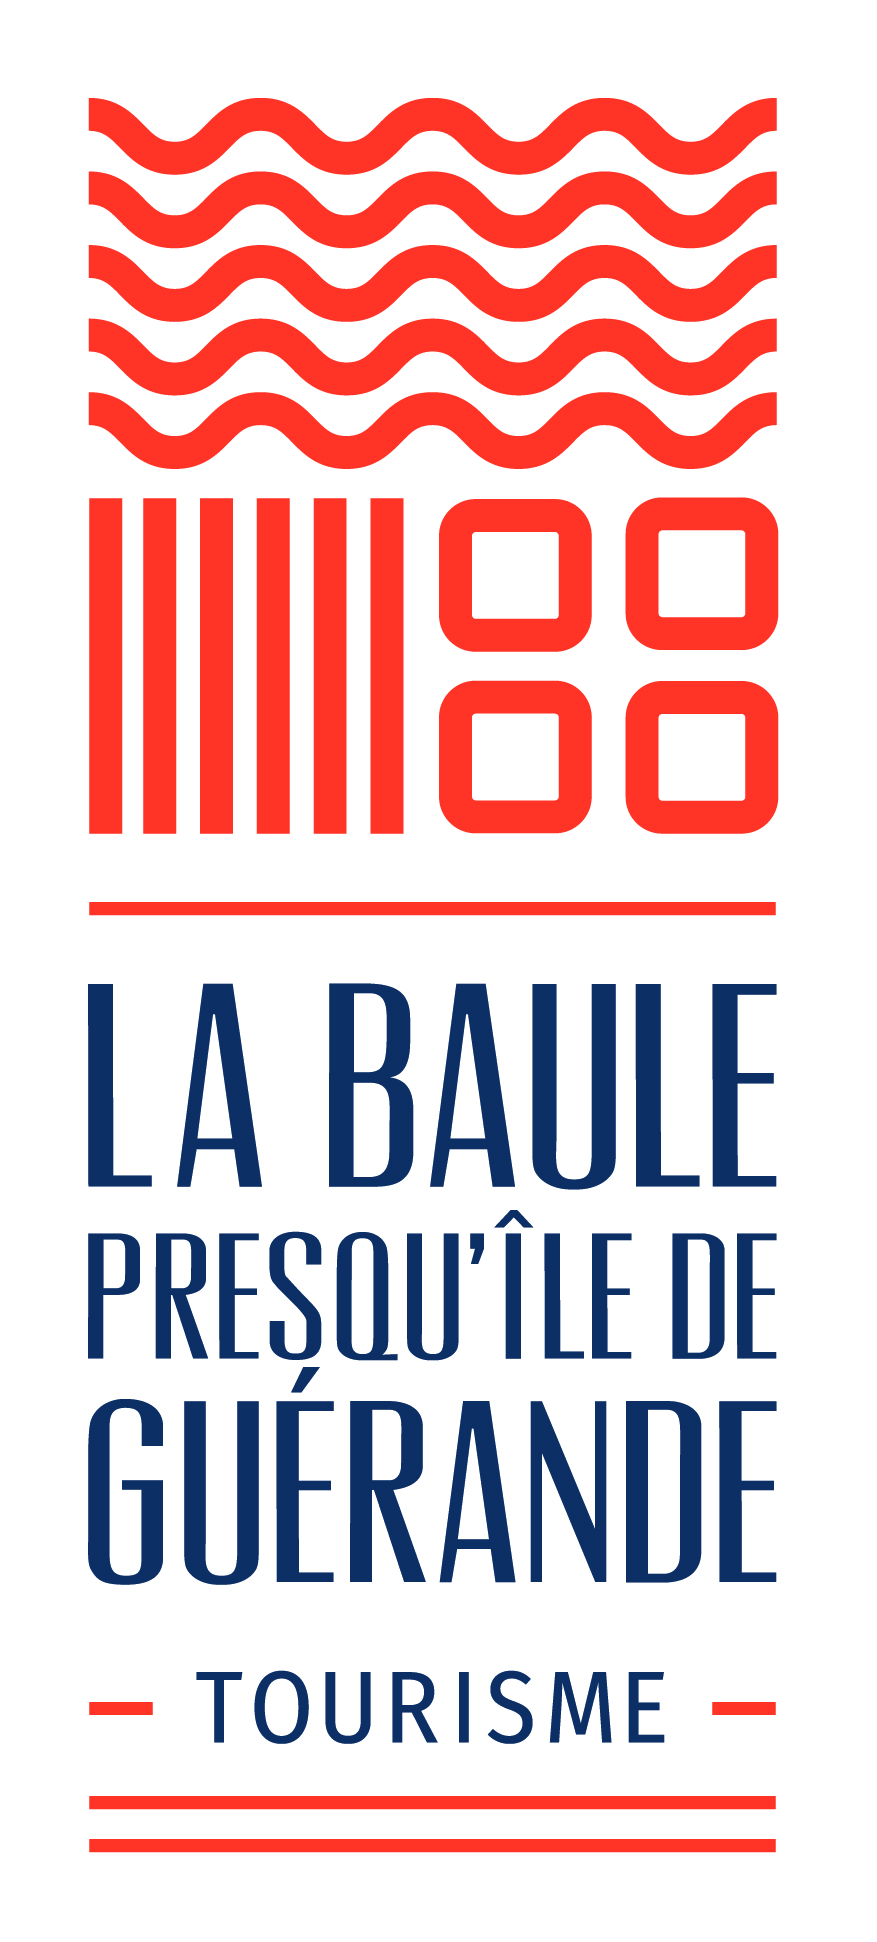 Office de tourisme La Baule Presqu'ile de Gu�rande